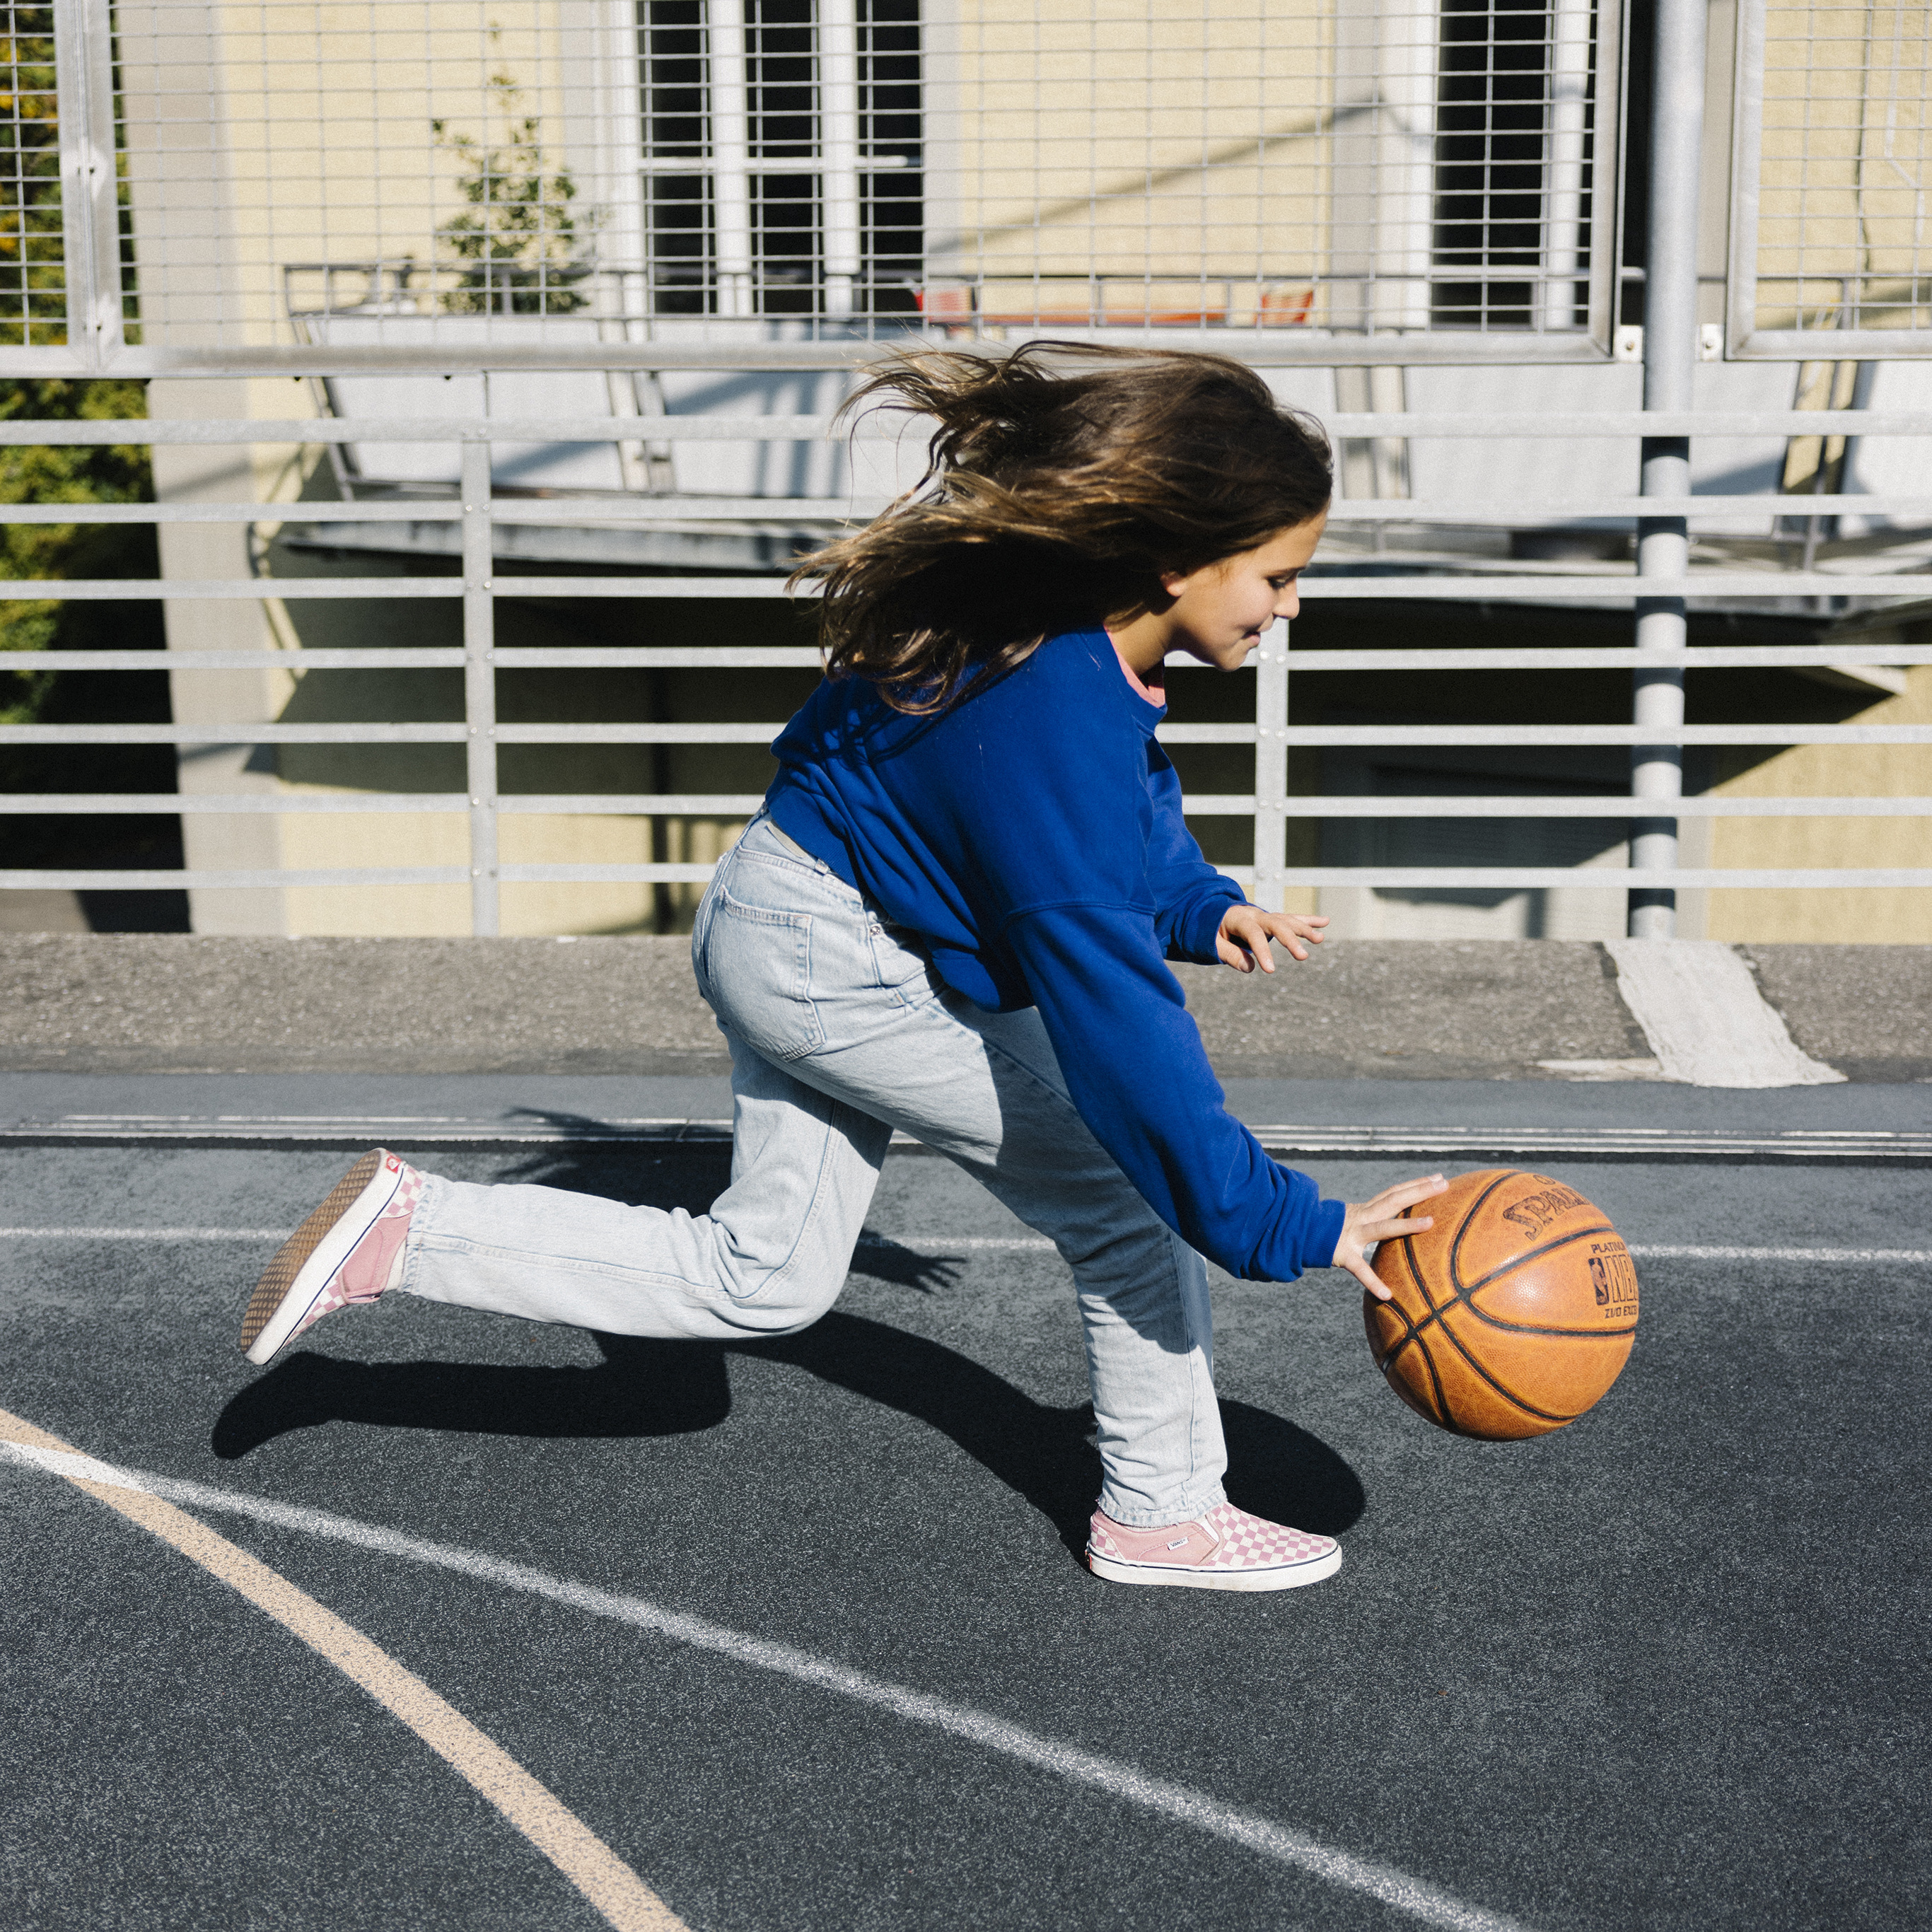 Une adolescente dribble un ballon de basket près du sol en courant.